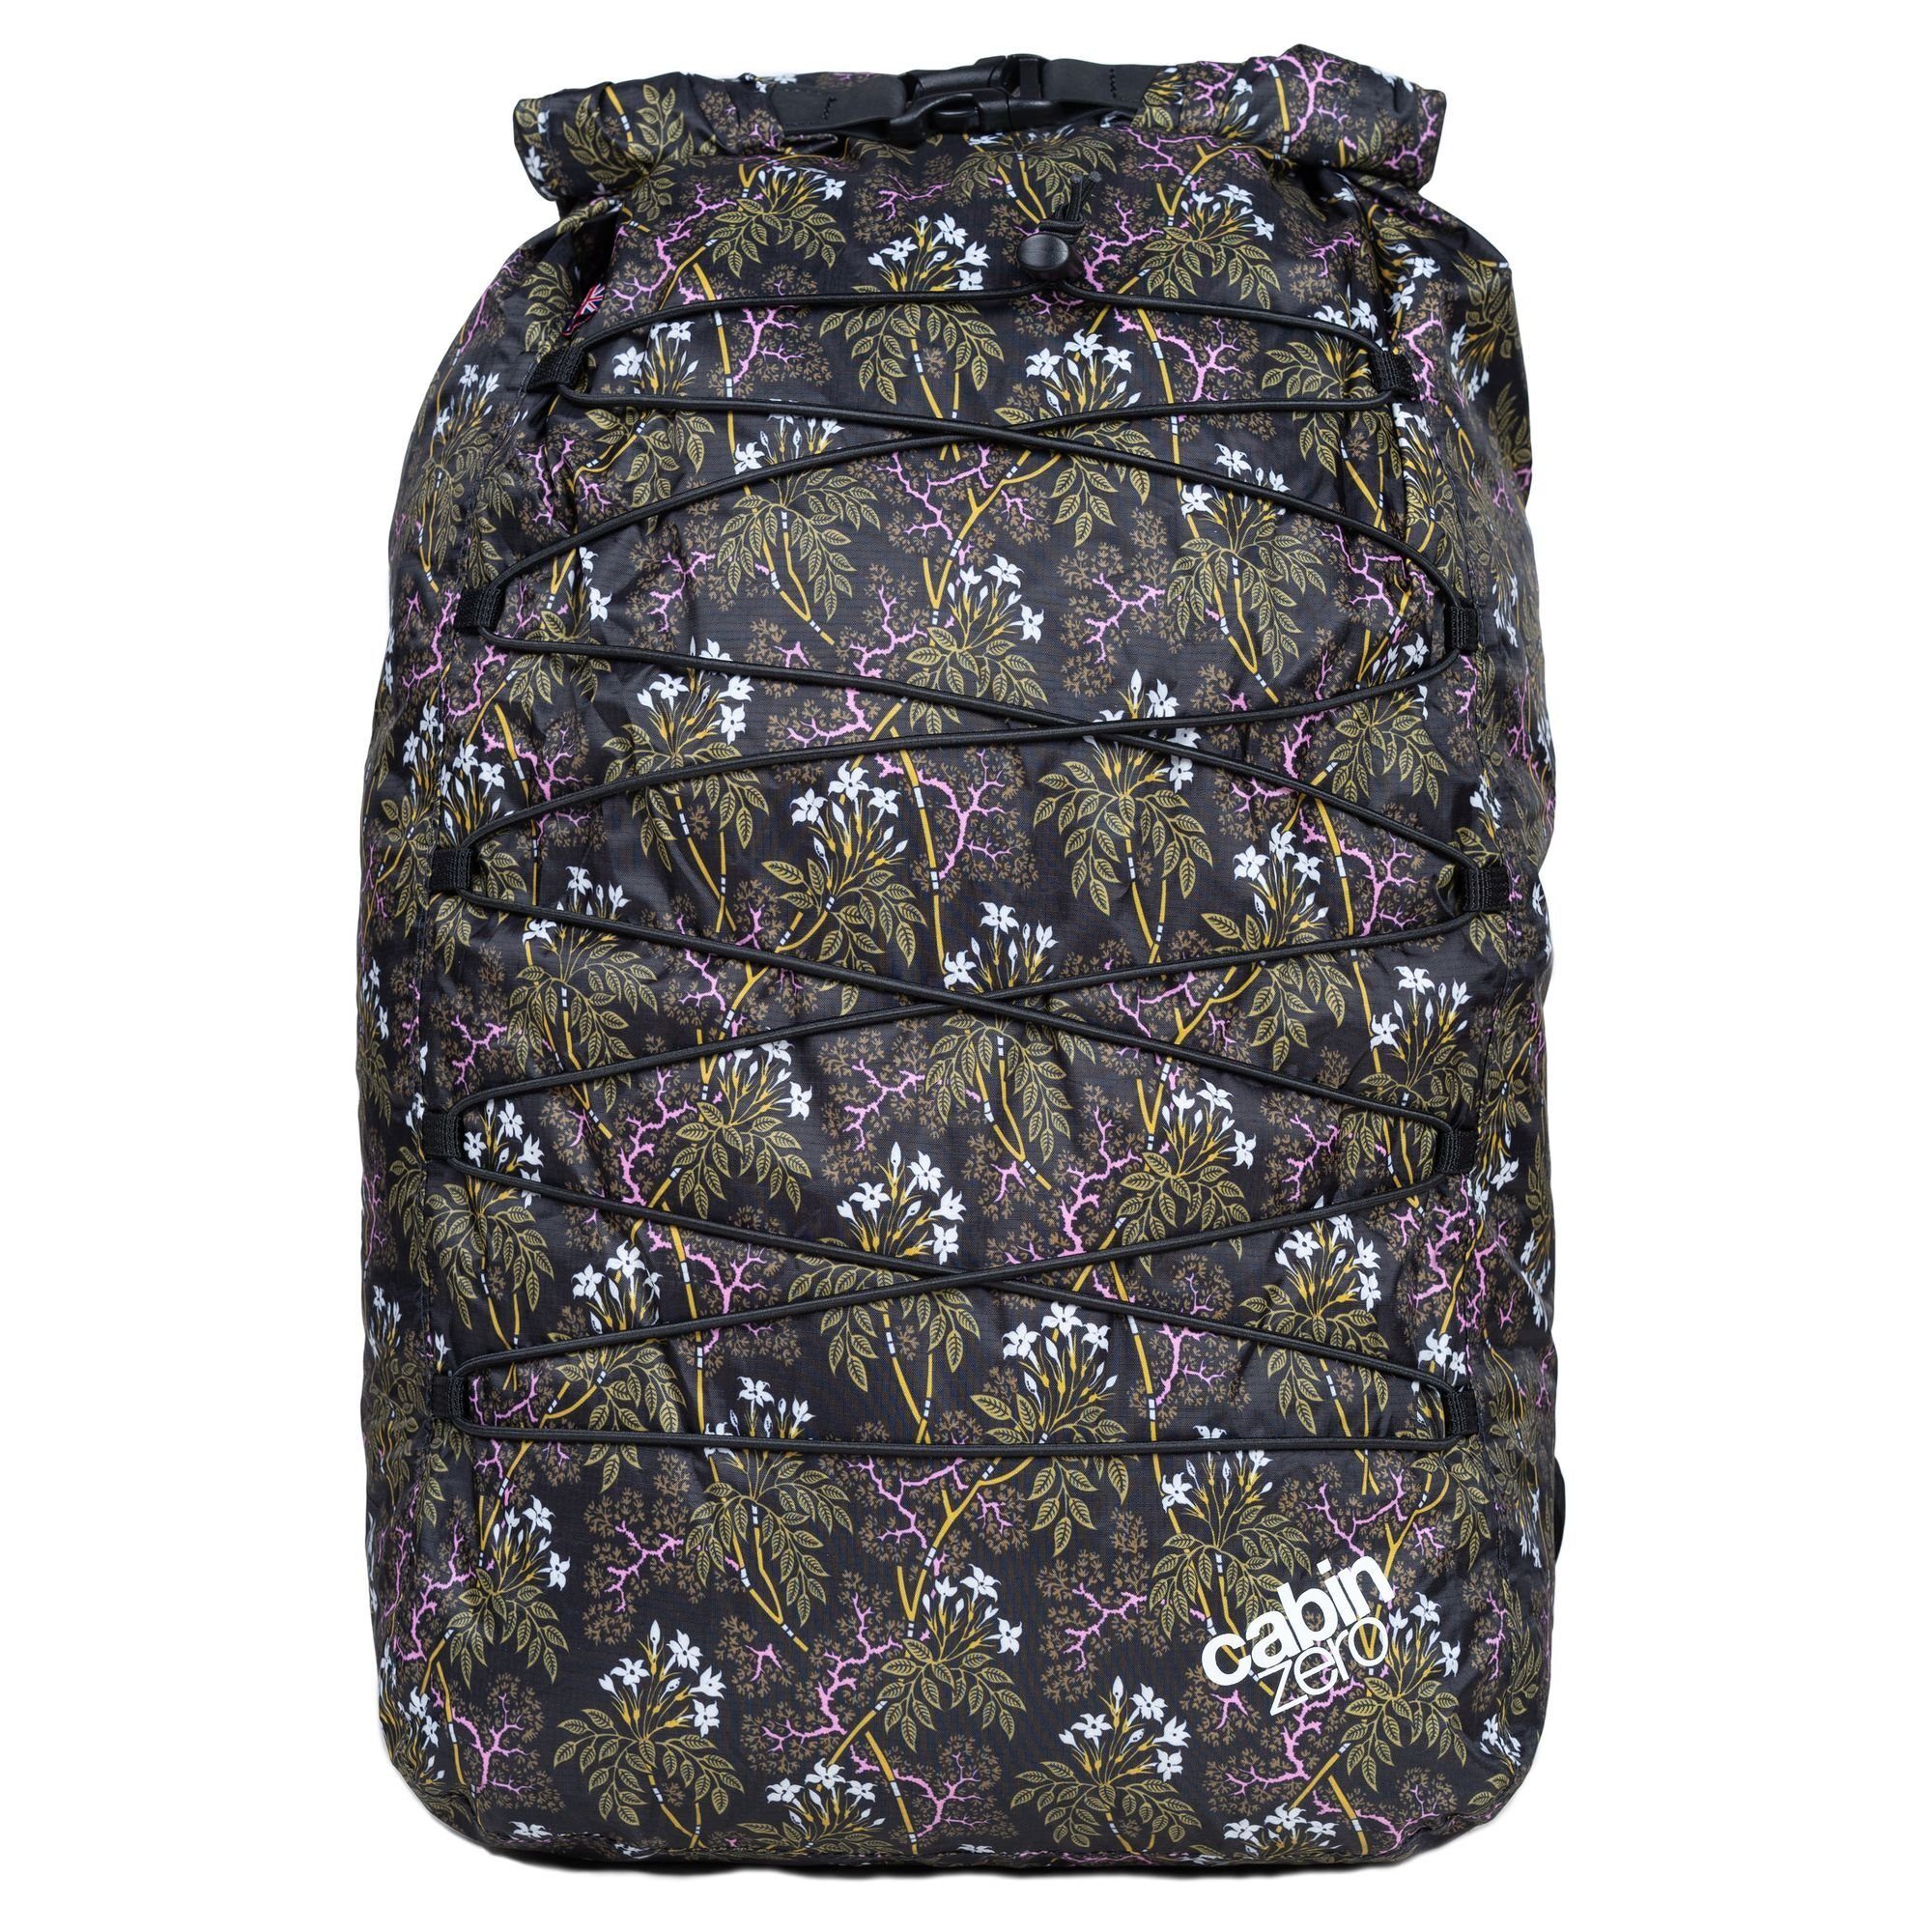 Cabinzero Rucksack Companion Bags, Nylon night floral